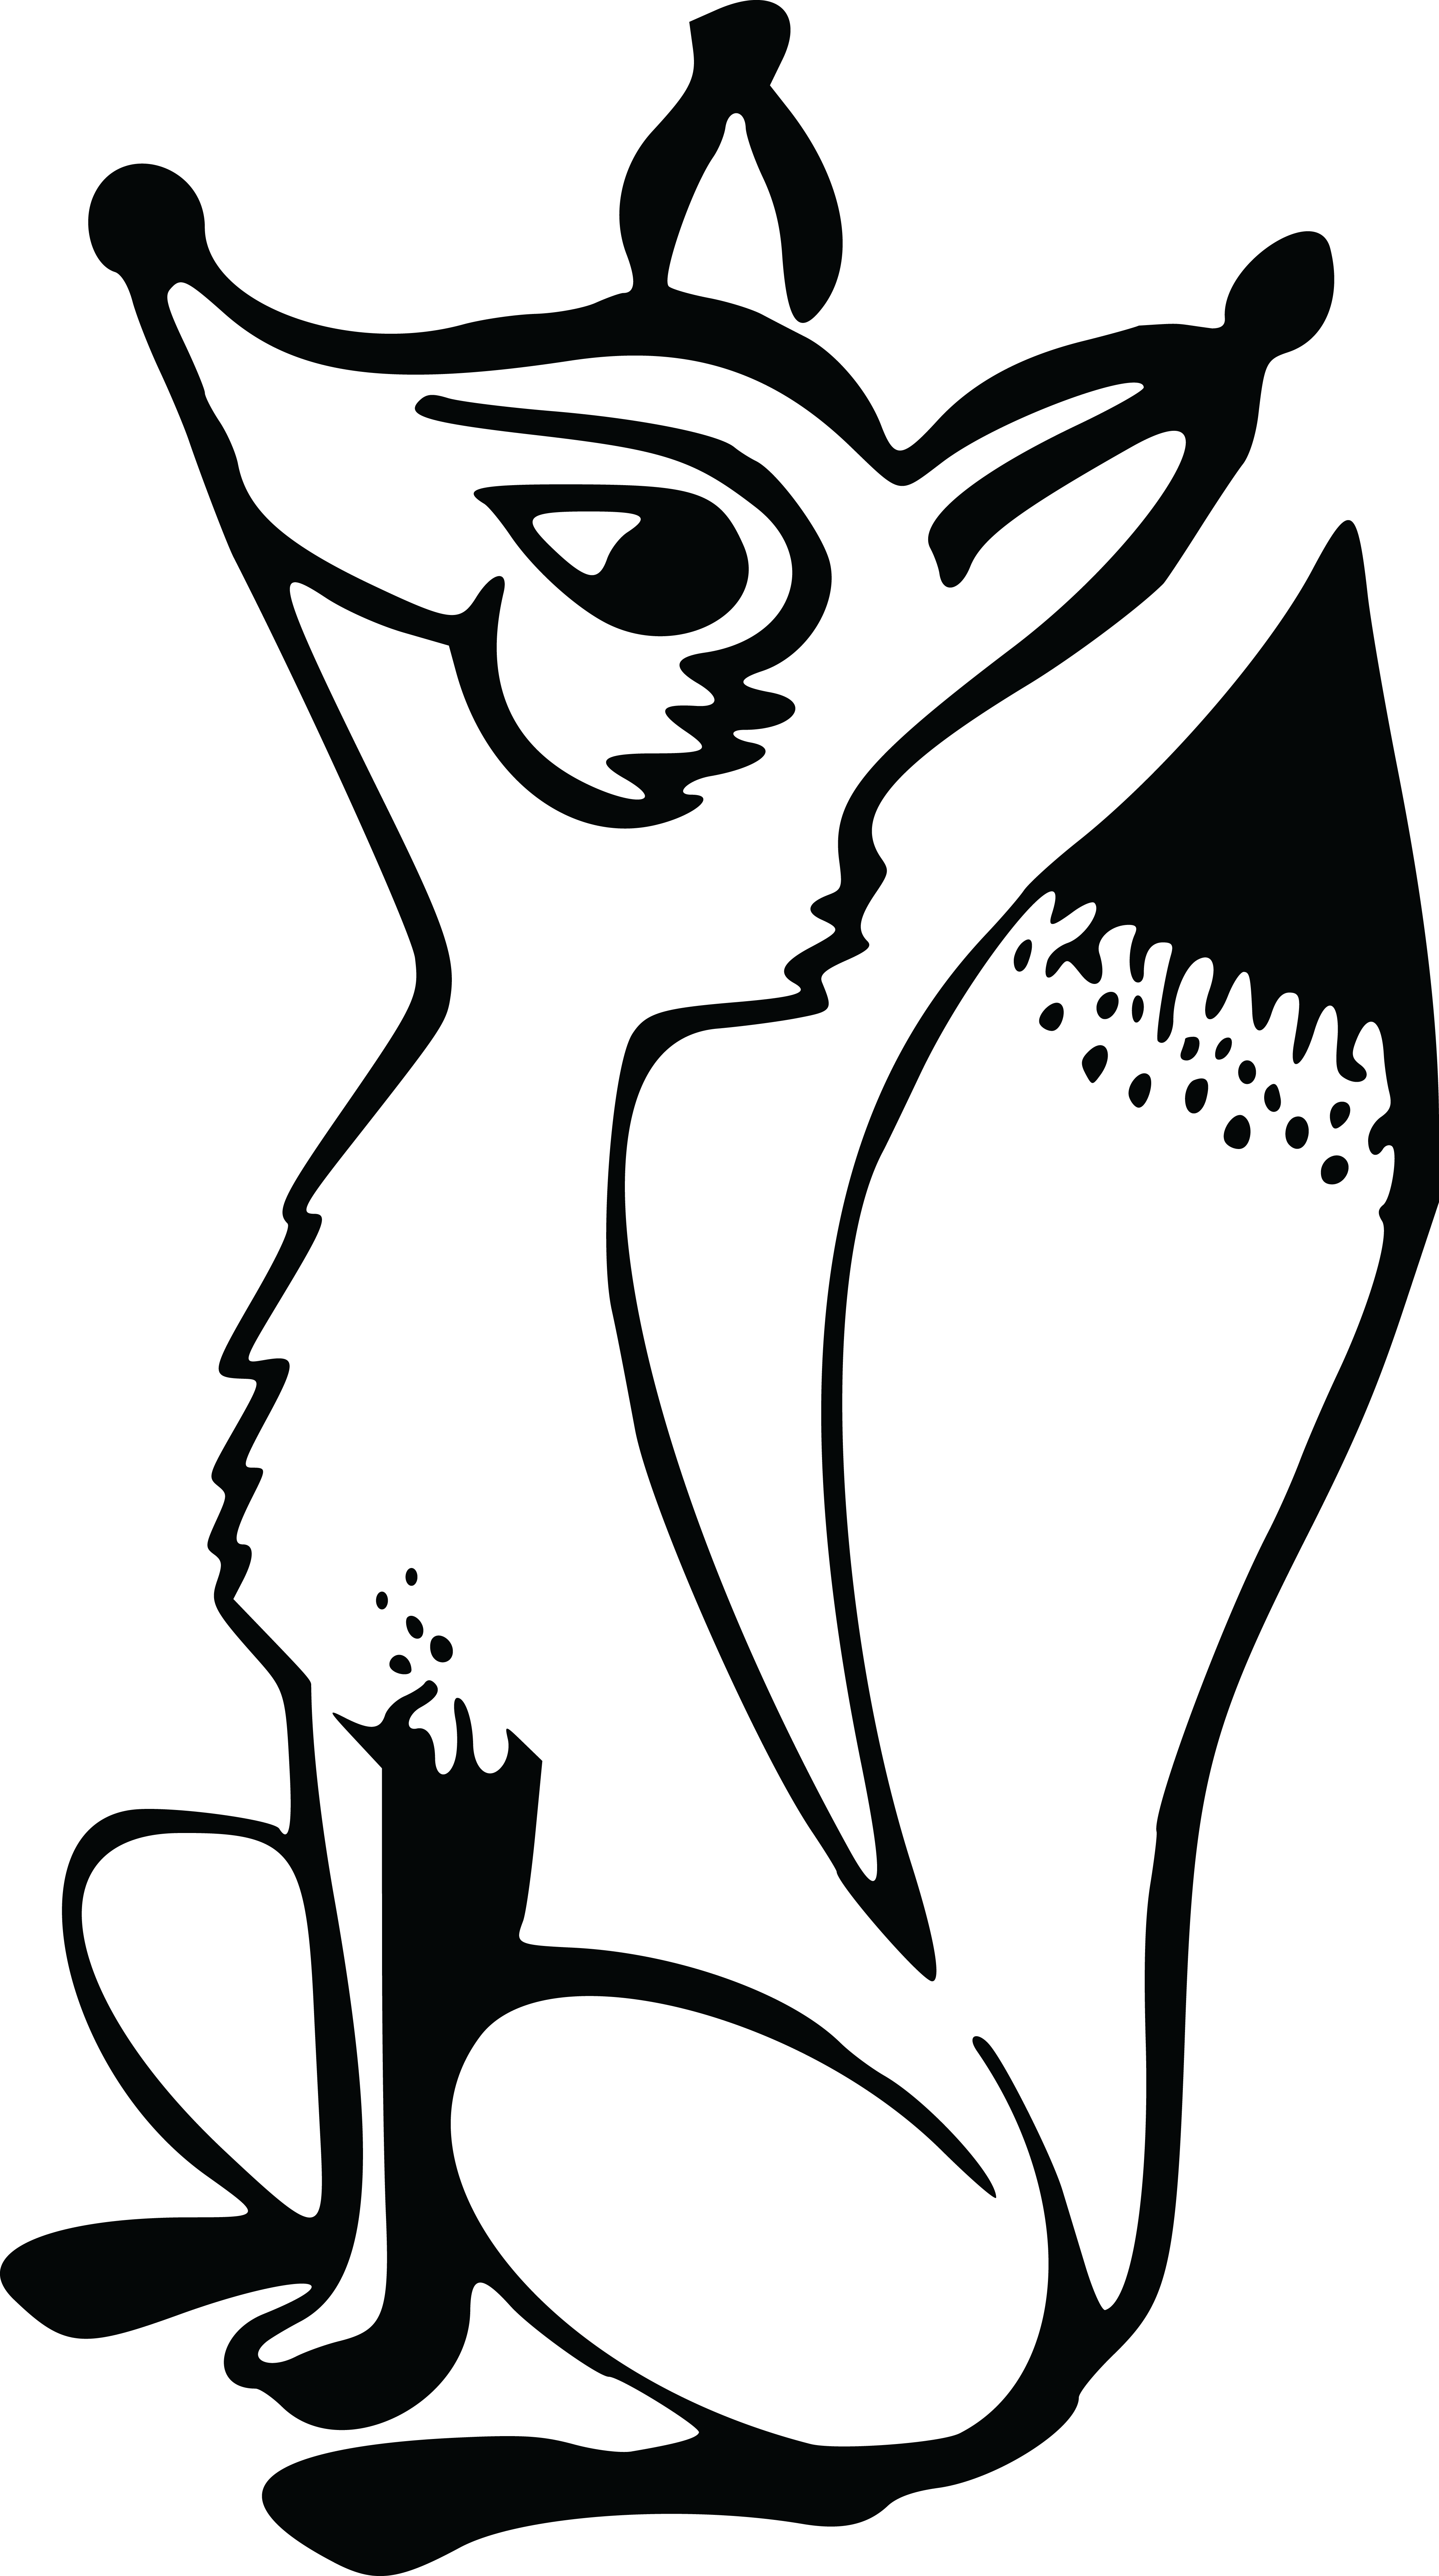 Black And White Clip Art Of A Fox , Transparent Cartoon.